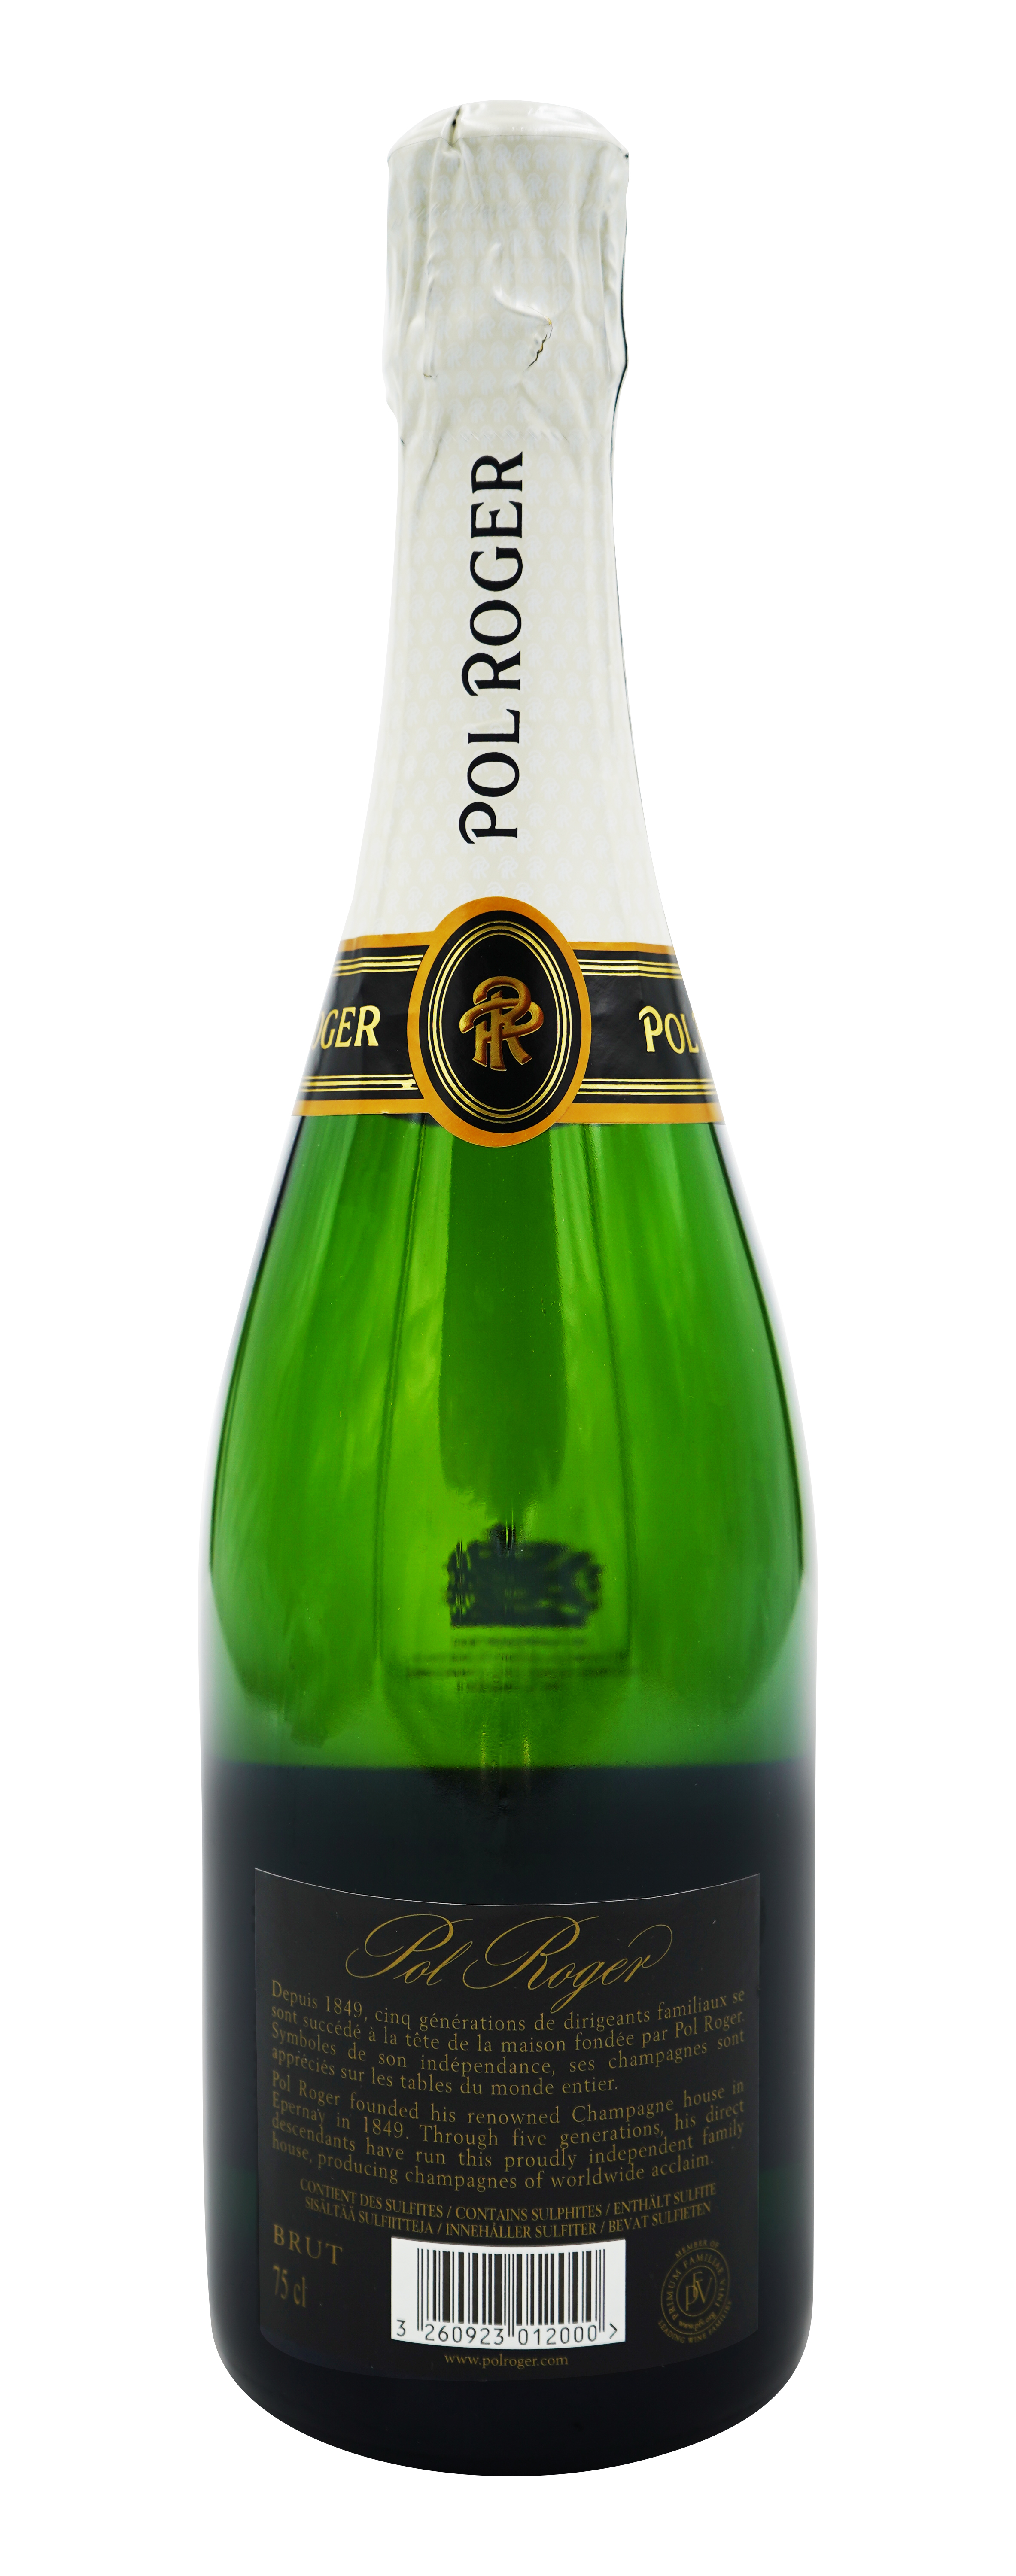 Pol Roger Champagner Reserve - back label